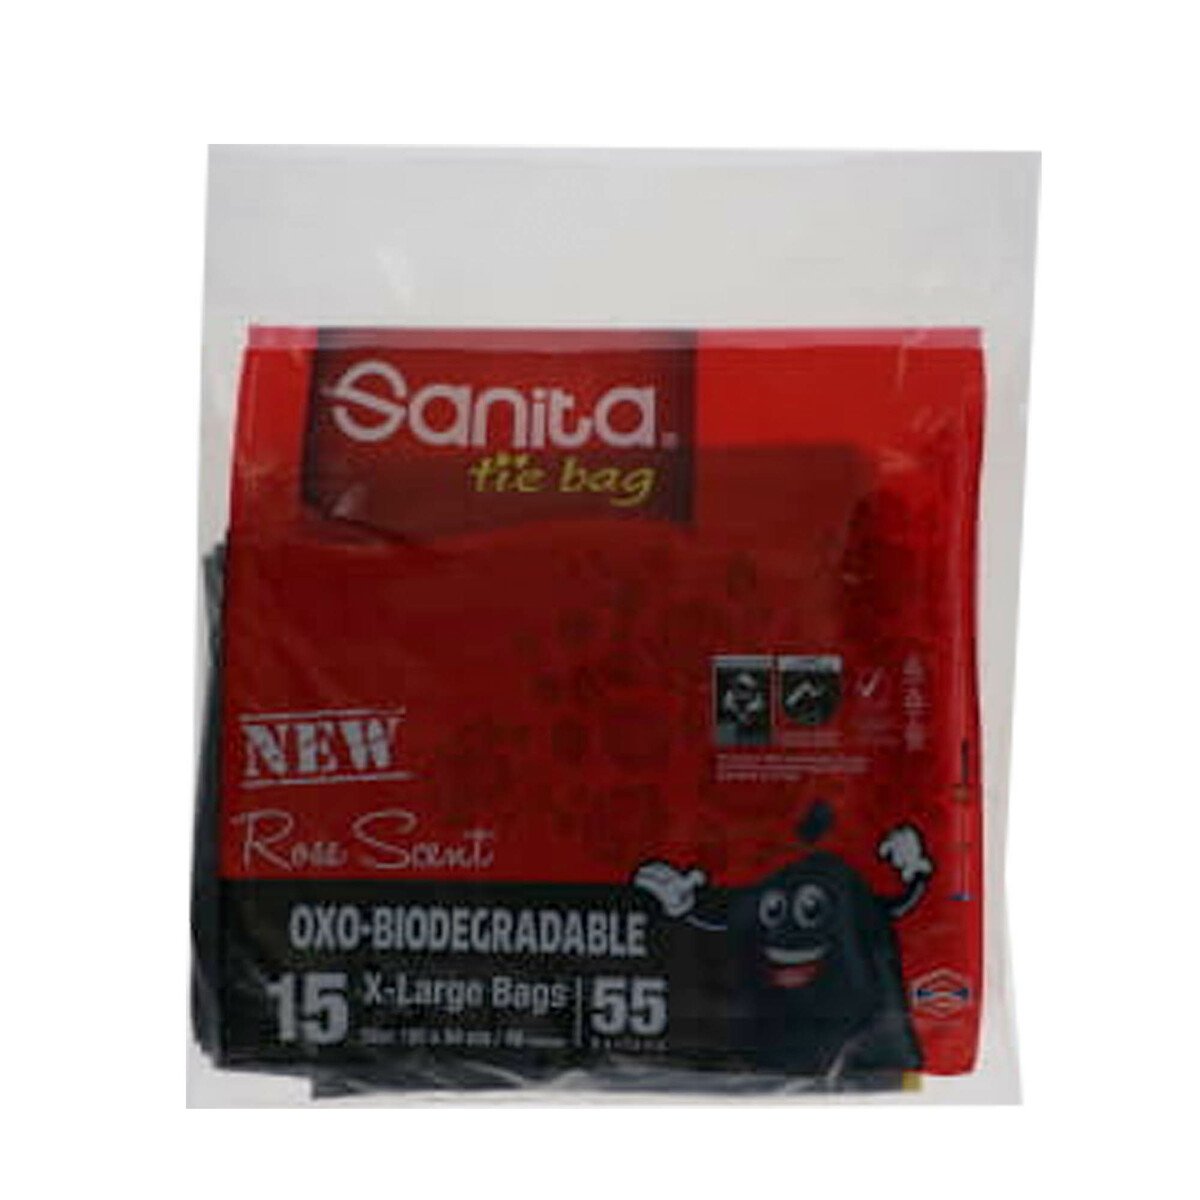 Sanita Tie Garbage Bag Oxo-Biodegradable Rose 55 Gallons Size X-Large 15pcs